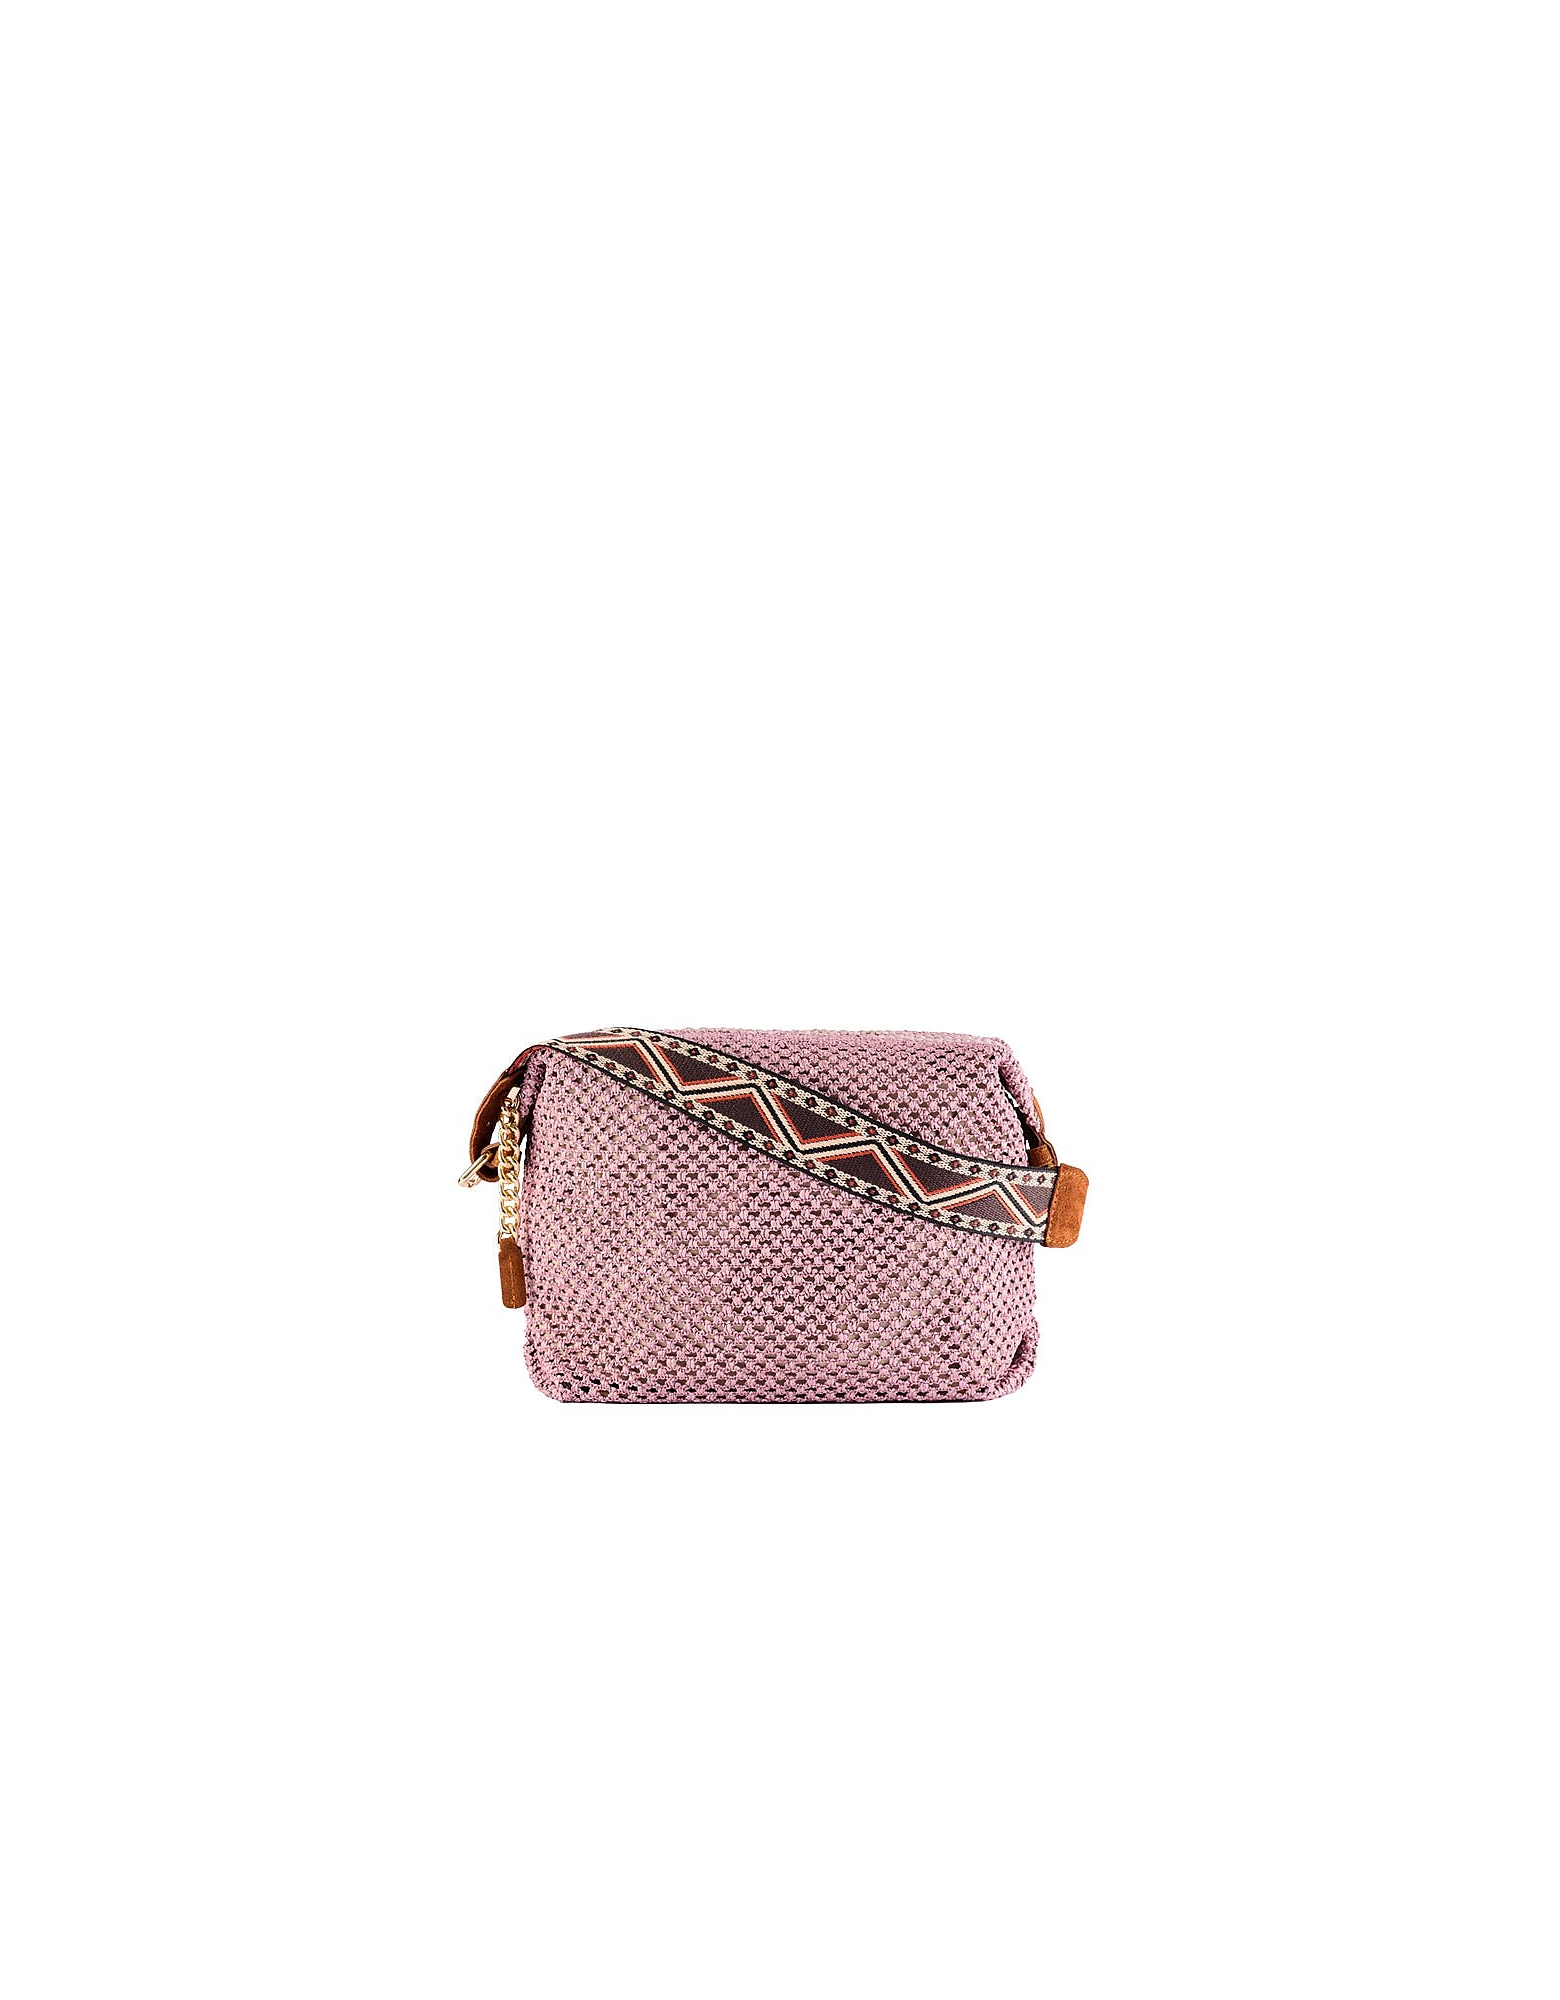 Viamailbag Designer Handbags Maya Drill - Shoulder Bag In Pink